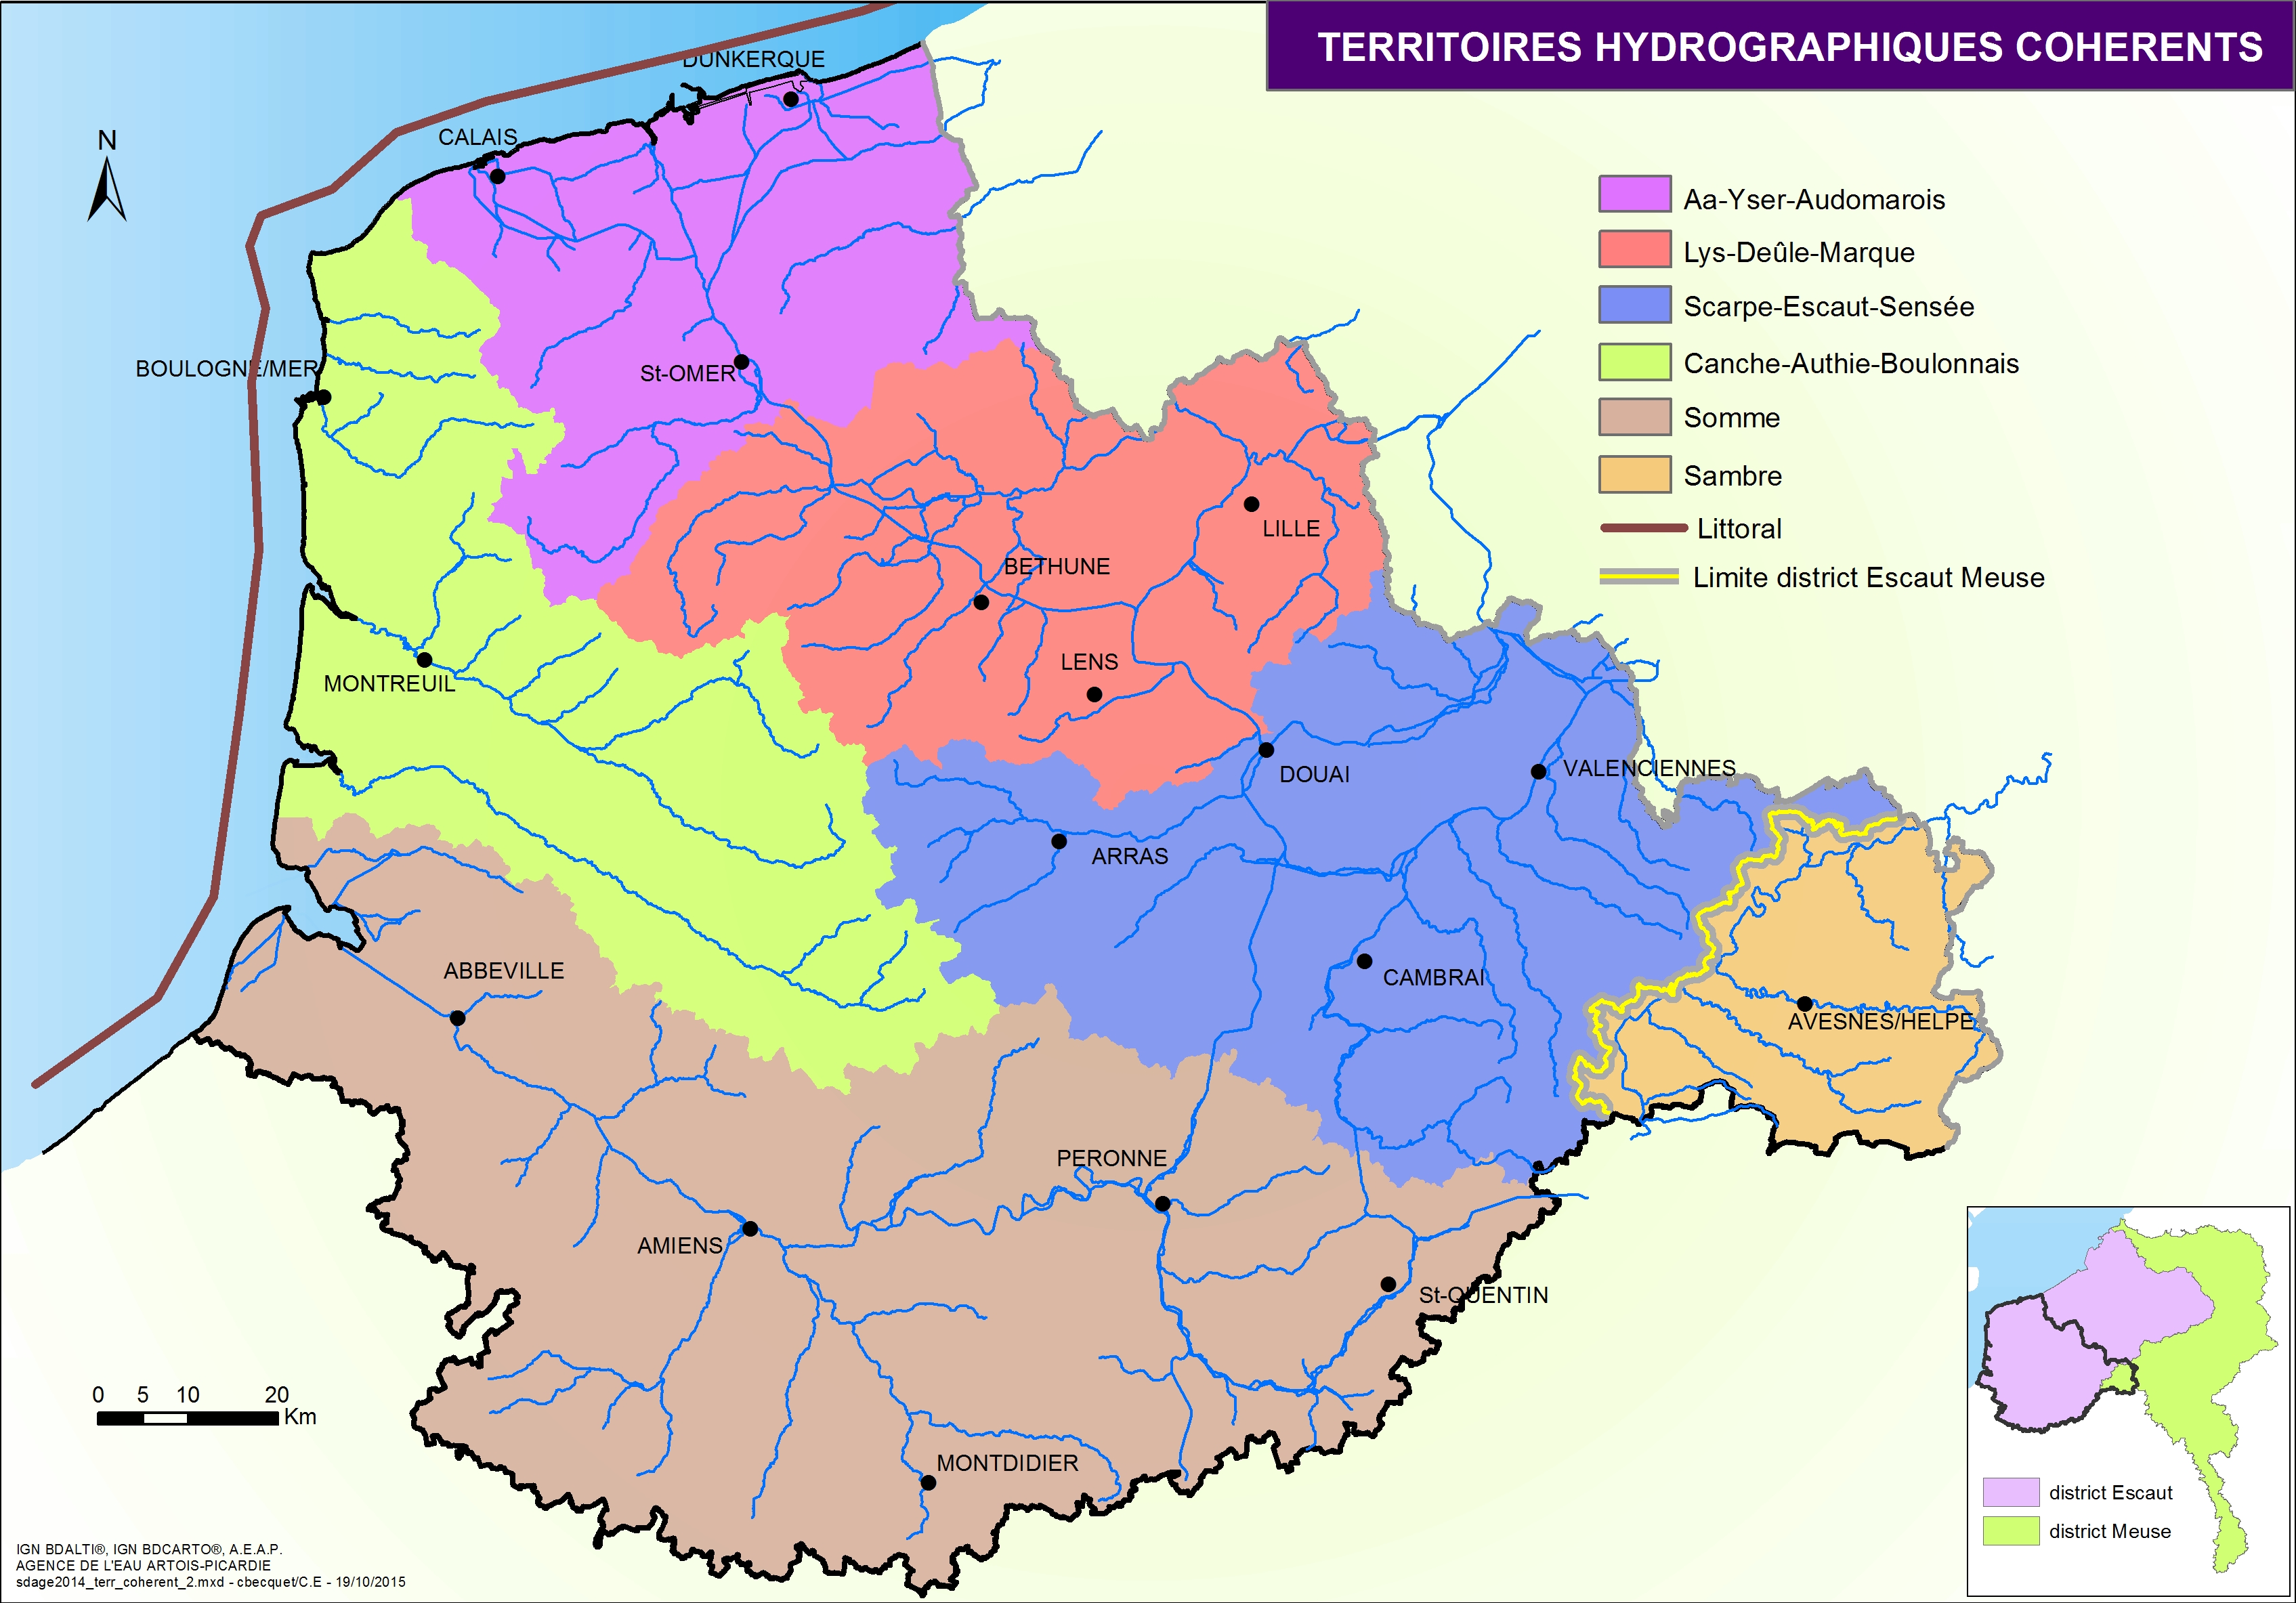 SAGE_Territoires hydrographiques cohérents